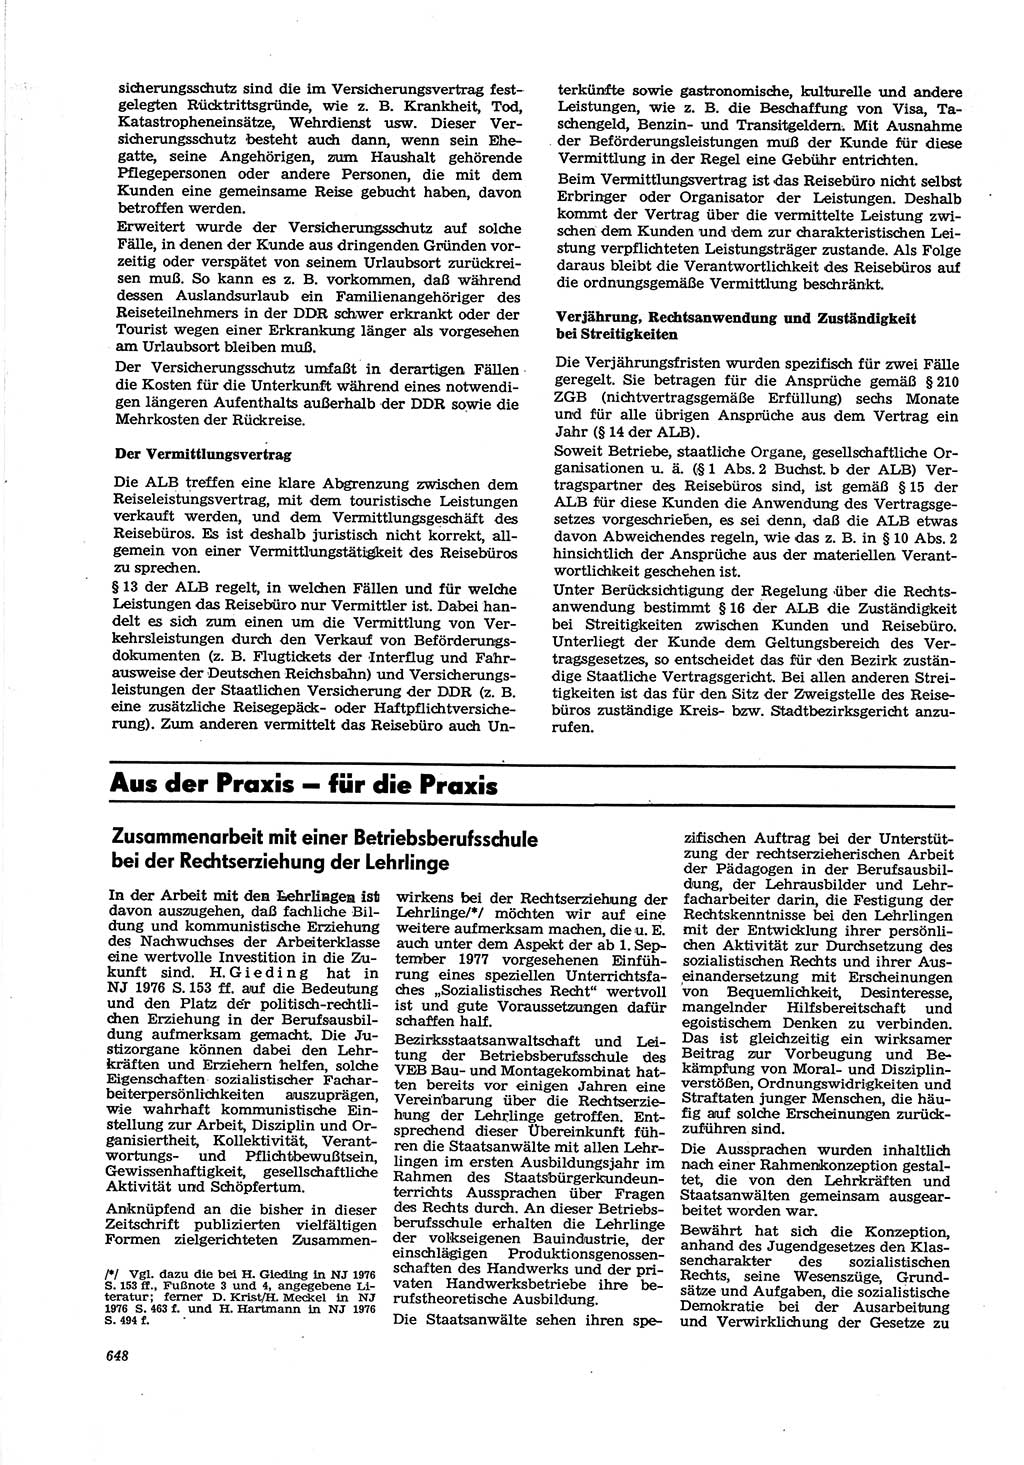 Neue Justiz (NJ), Zeitschrift für Recht und Rechtswissenschaft [Deutsche Demokratische Republik (DDR)], 30. Jahrgang 1976, Seite 648 (NJ DDR 1976, S. 648)